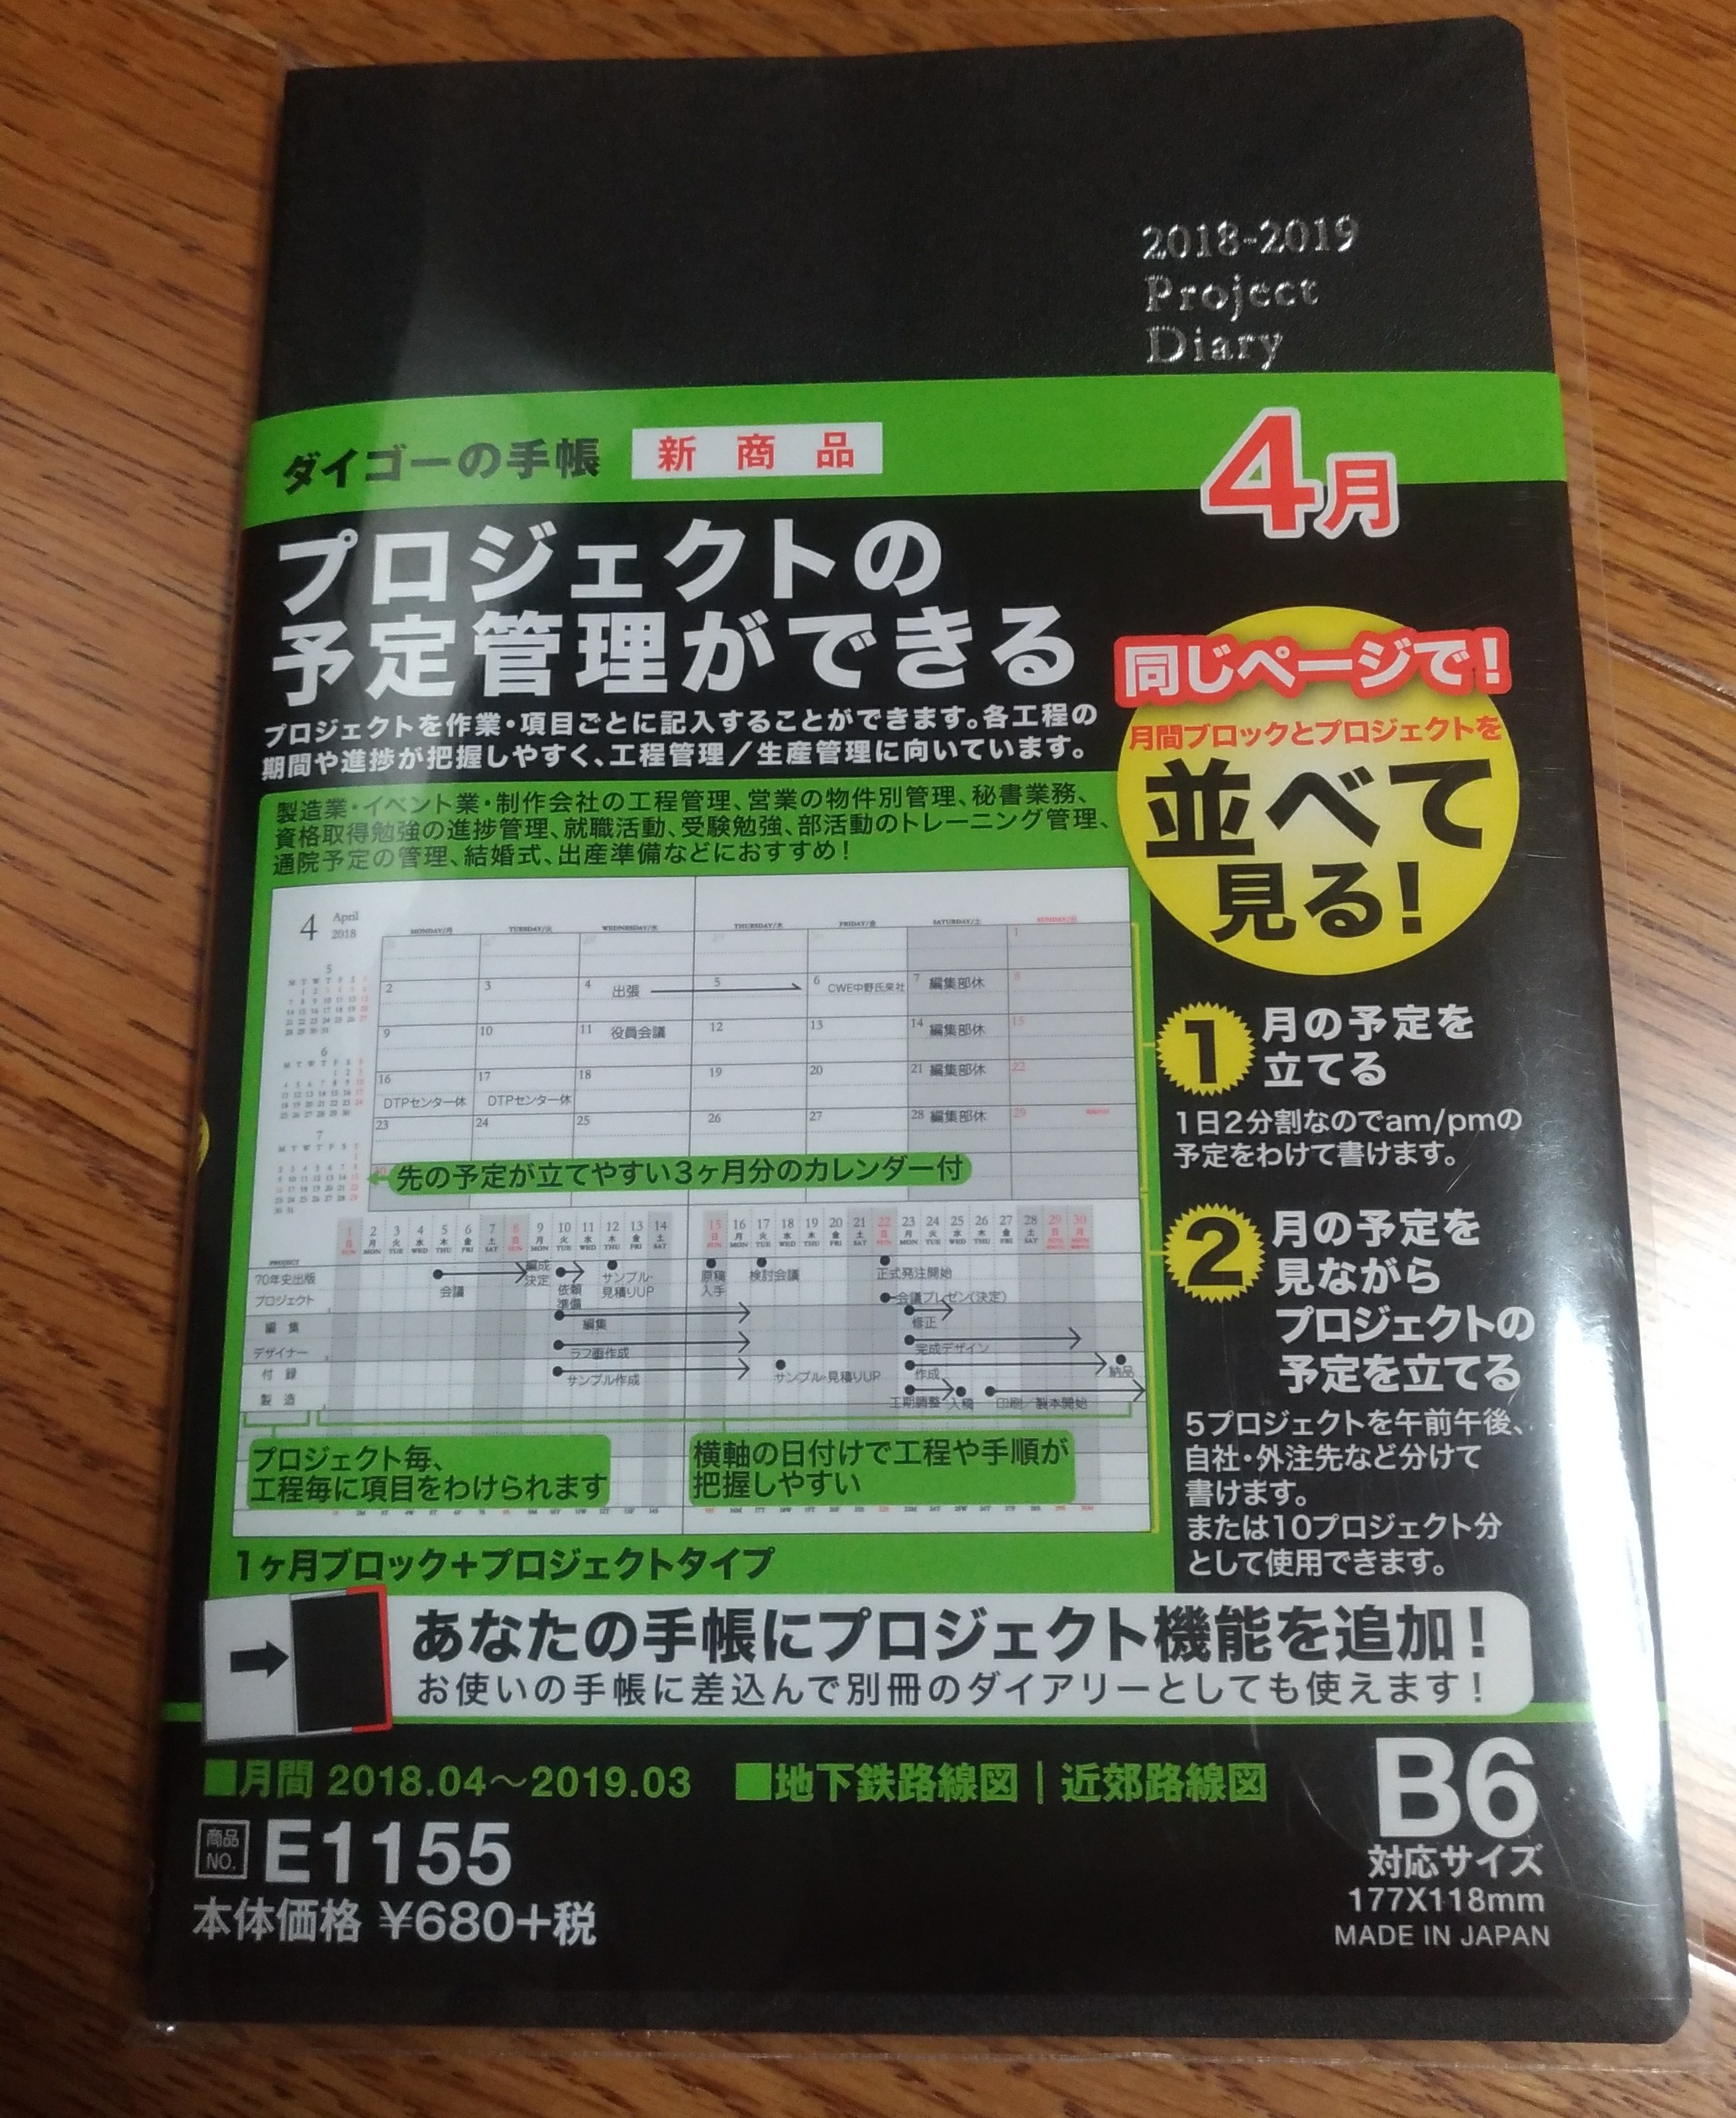 DAIGOの手帳「プロジェクトダイアリー（B6サイズ）」を買いました。